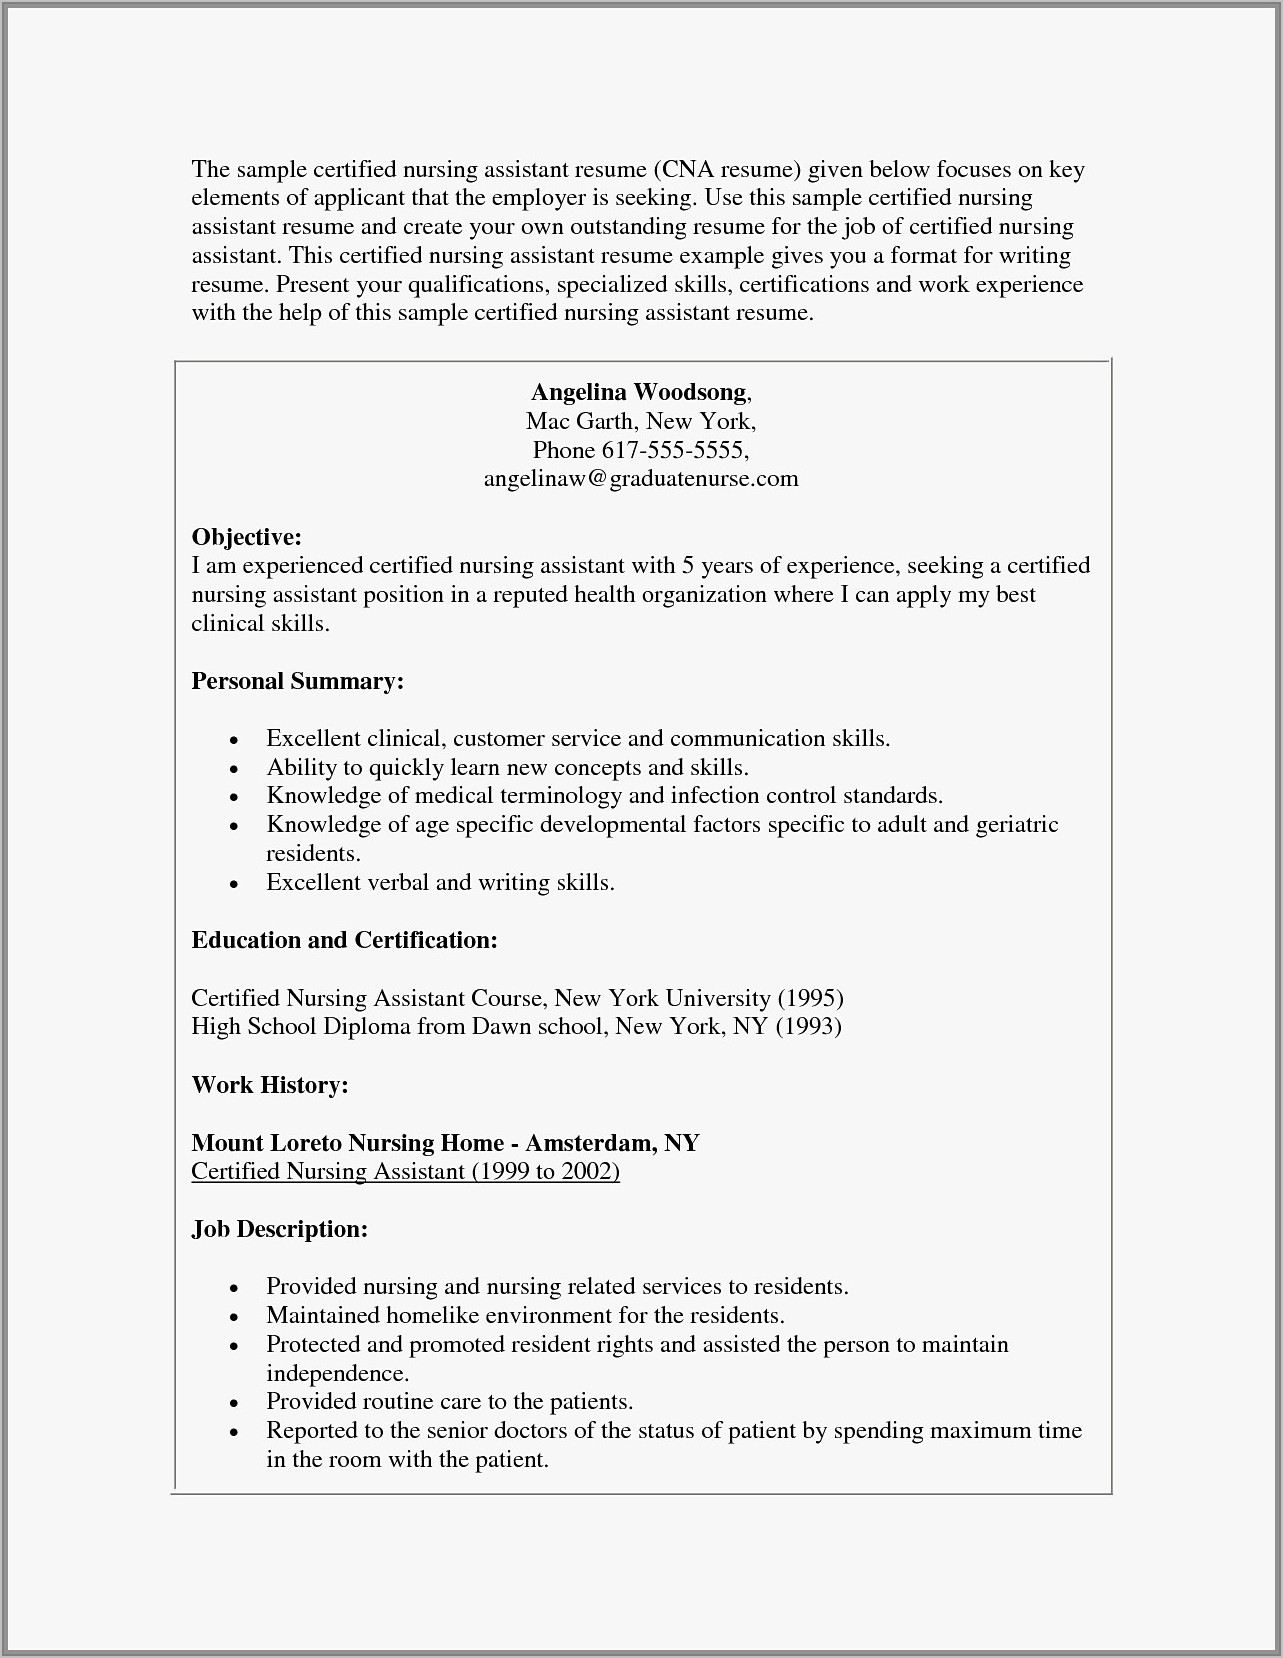 Sample Resume For Certified Nursing Assistant